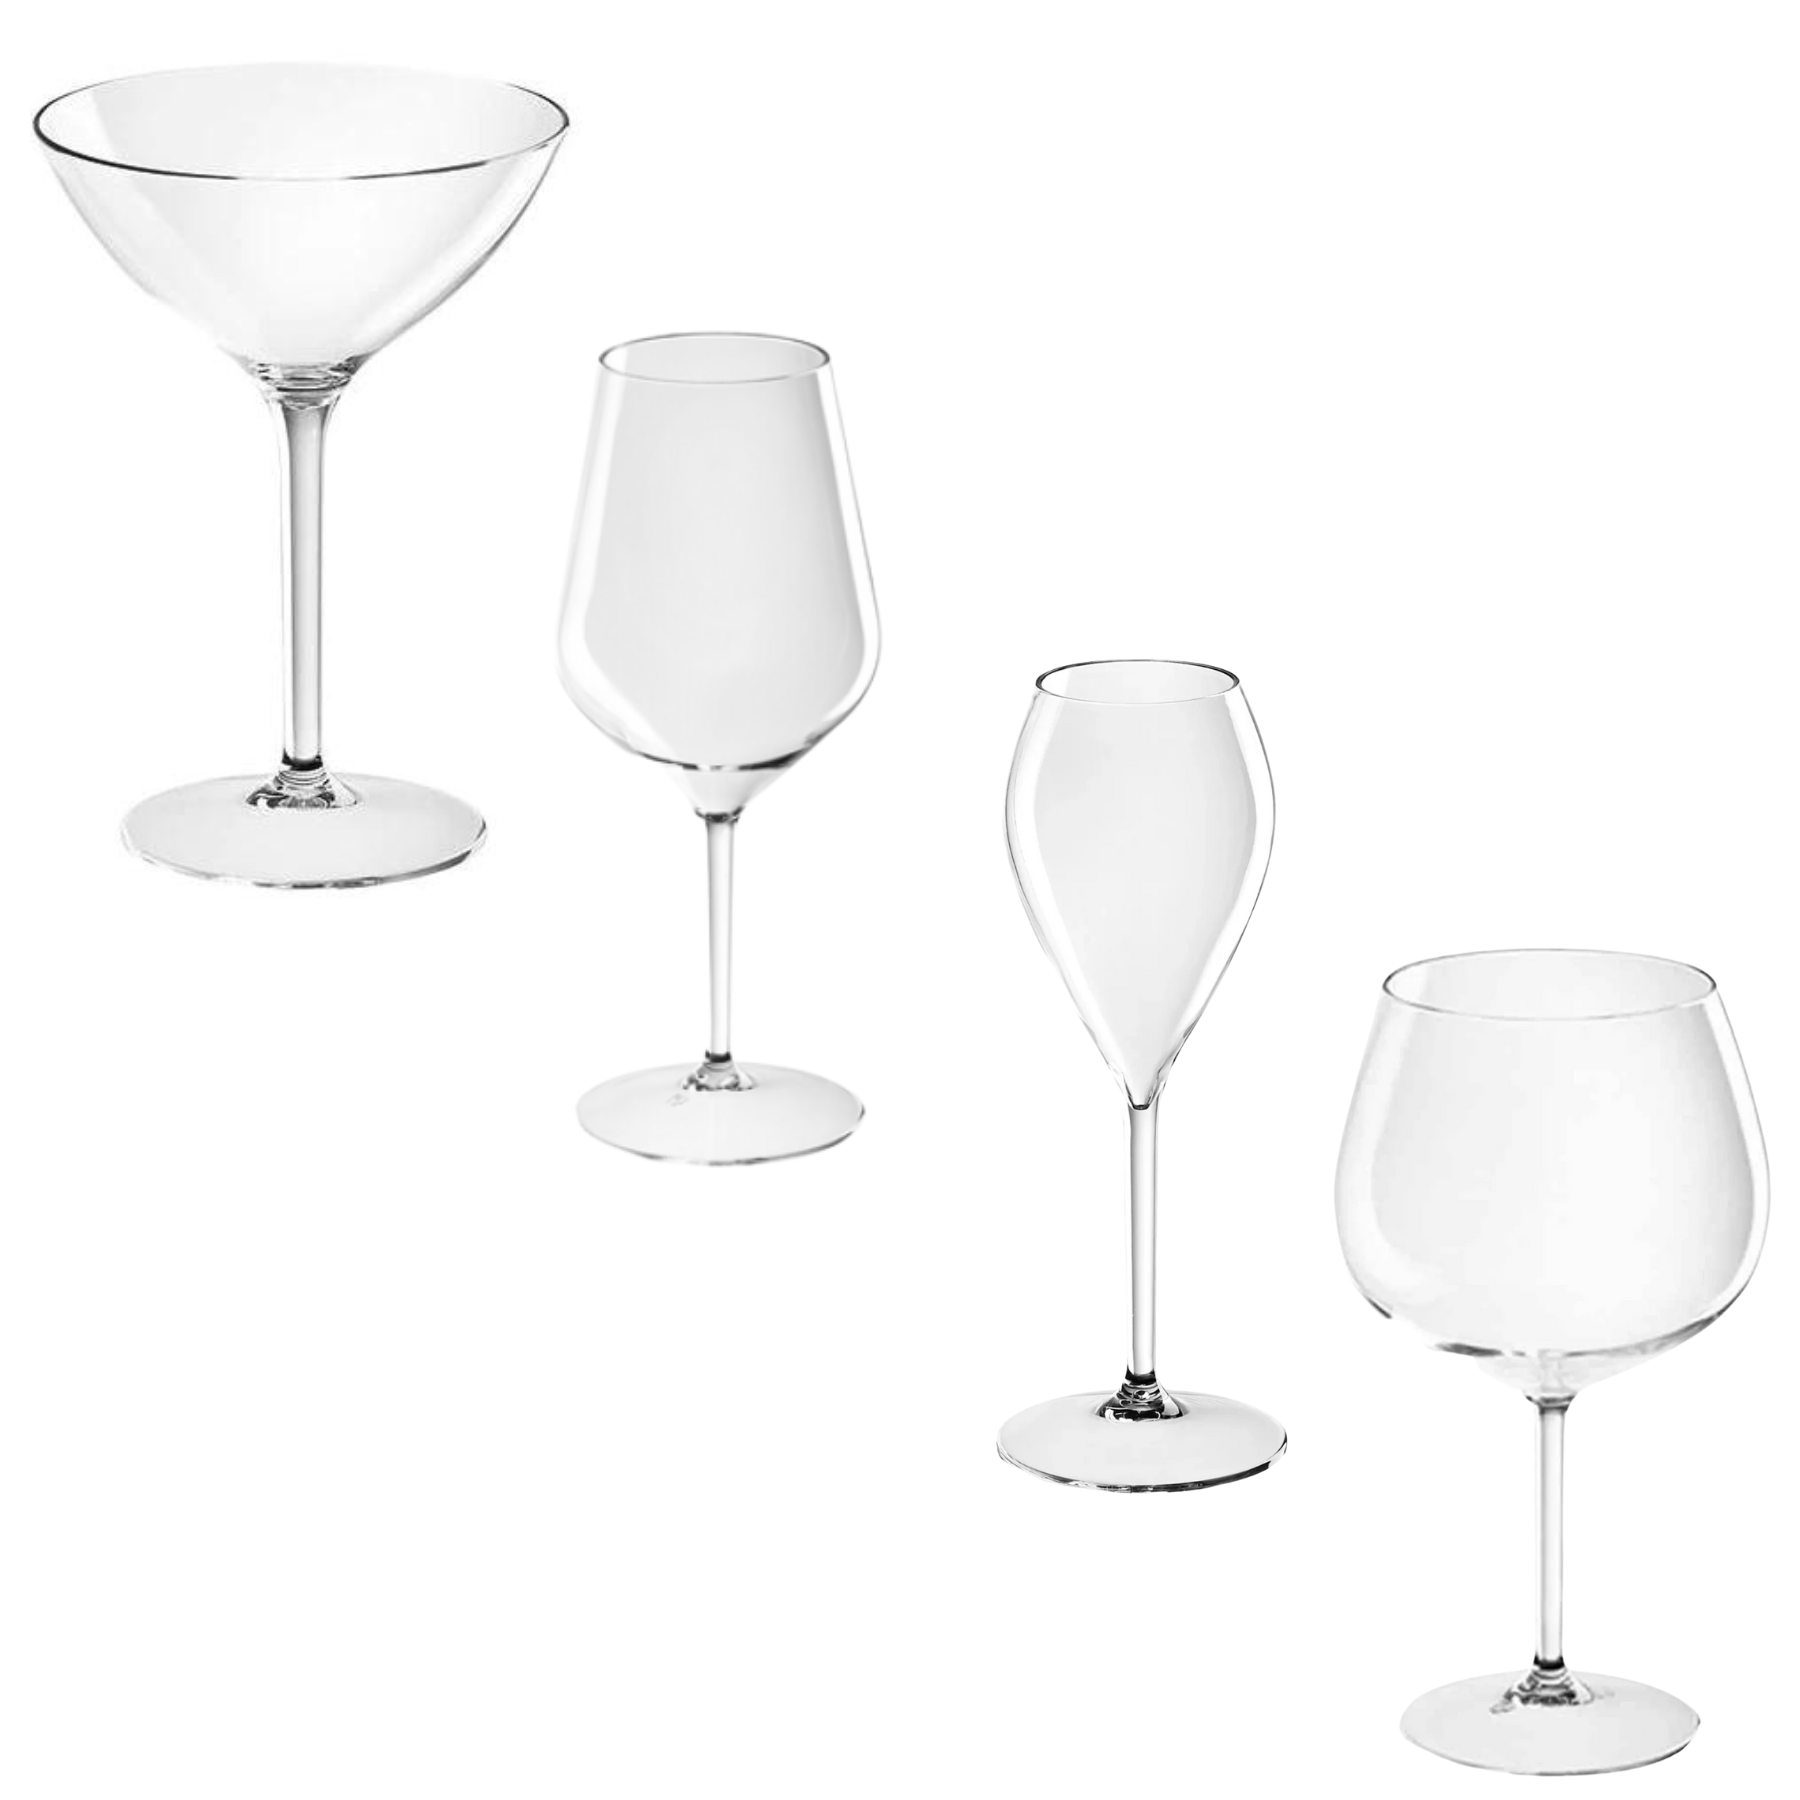 Bicchieri eleganti riutilizzabili infrangibili in policarbonato traspa –  NaturalCart